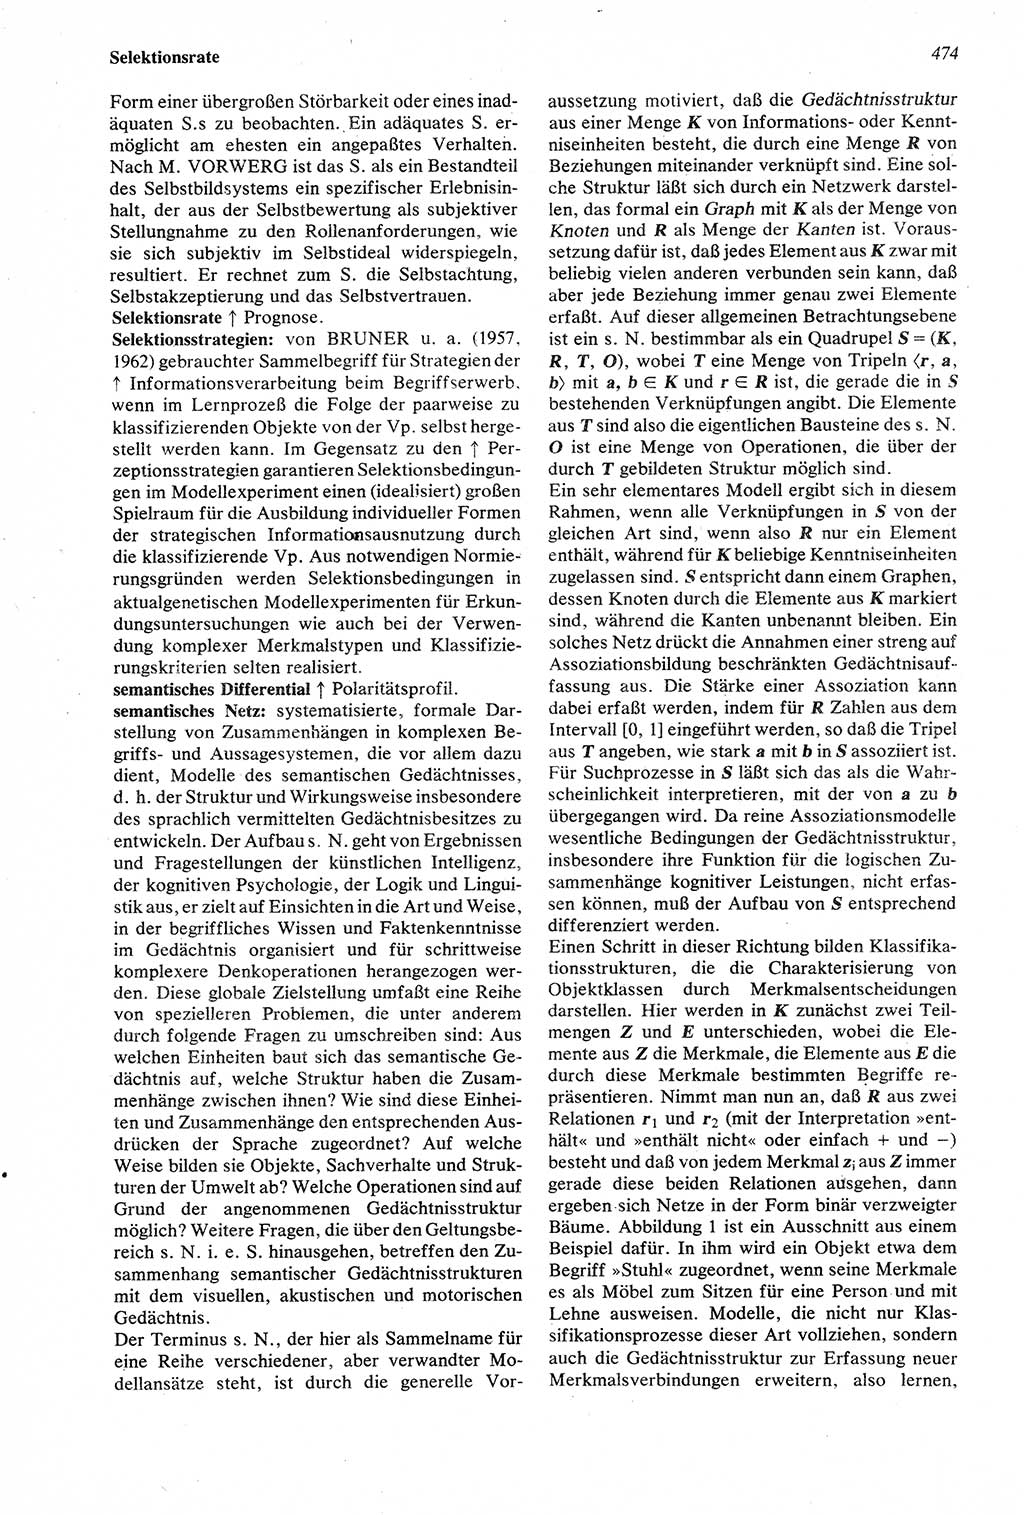 Wörterbuch der Psychologie [Deutsche Demokratische Republik (DDR)] 1976, Seite 474 (Wb. Psych. DDR 1976, S. 474)